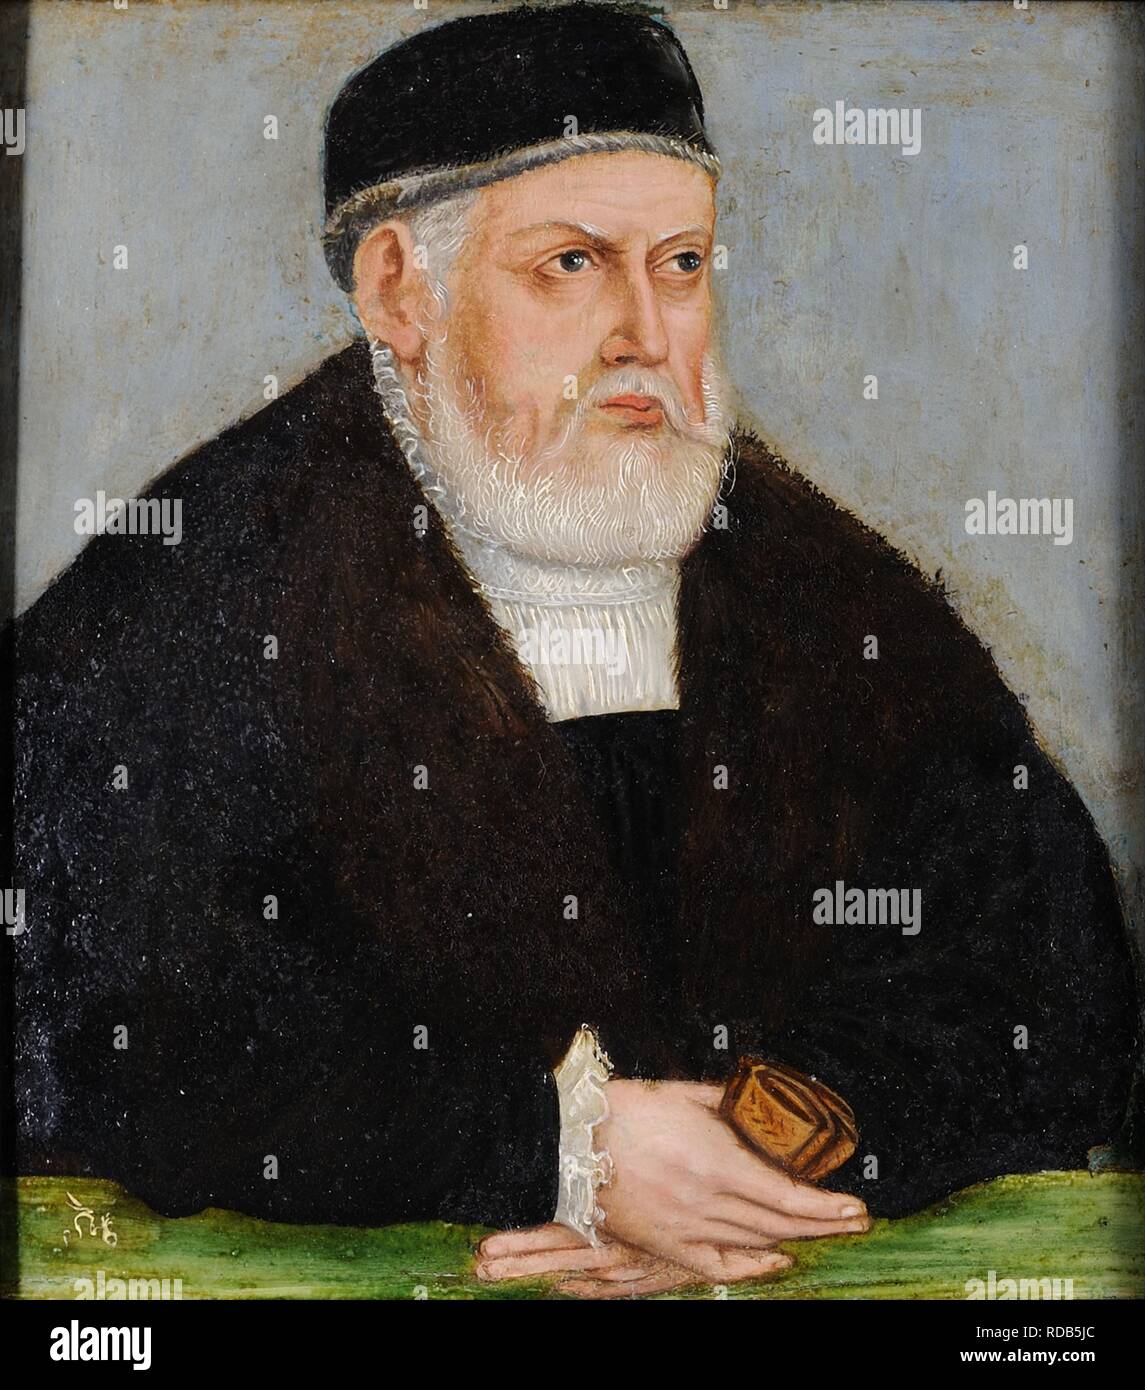 Portrait of Sigismund I of Poland (1467-1548). Museum: Czartoryski Museum, Krakow. Author: CRANACH, LUCAS THE YOUNGER. Stock Photo